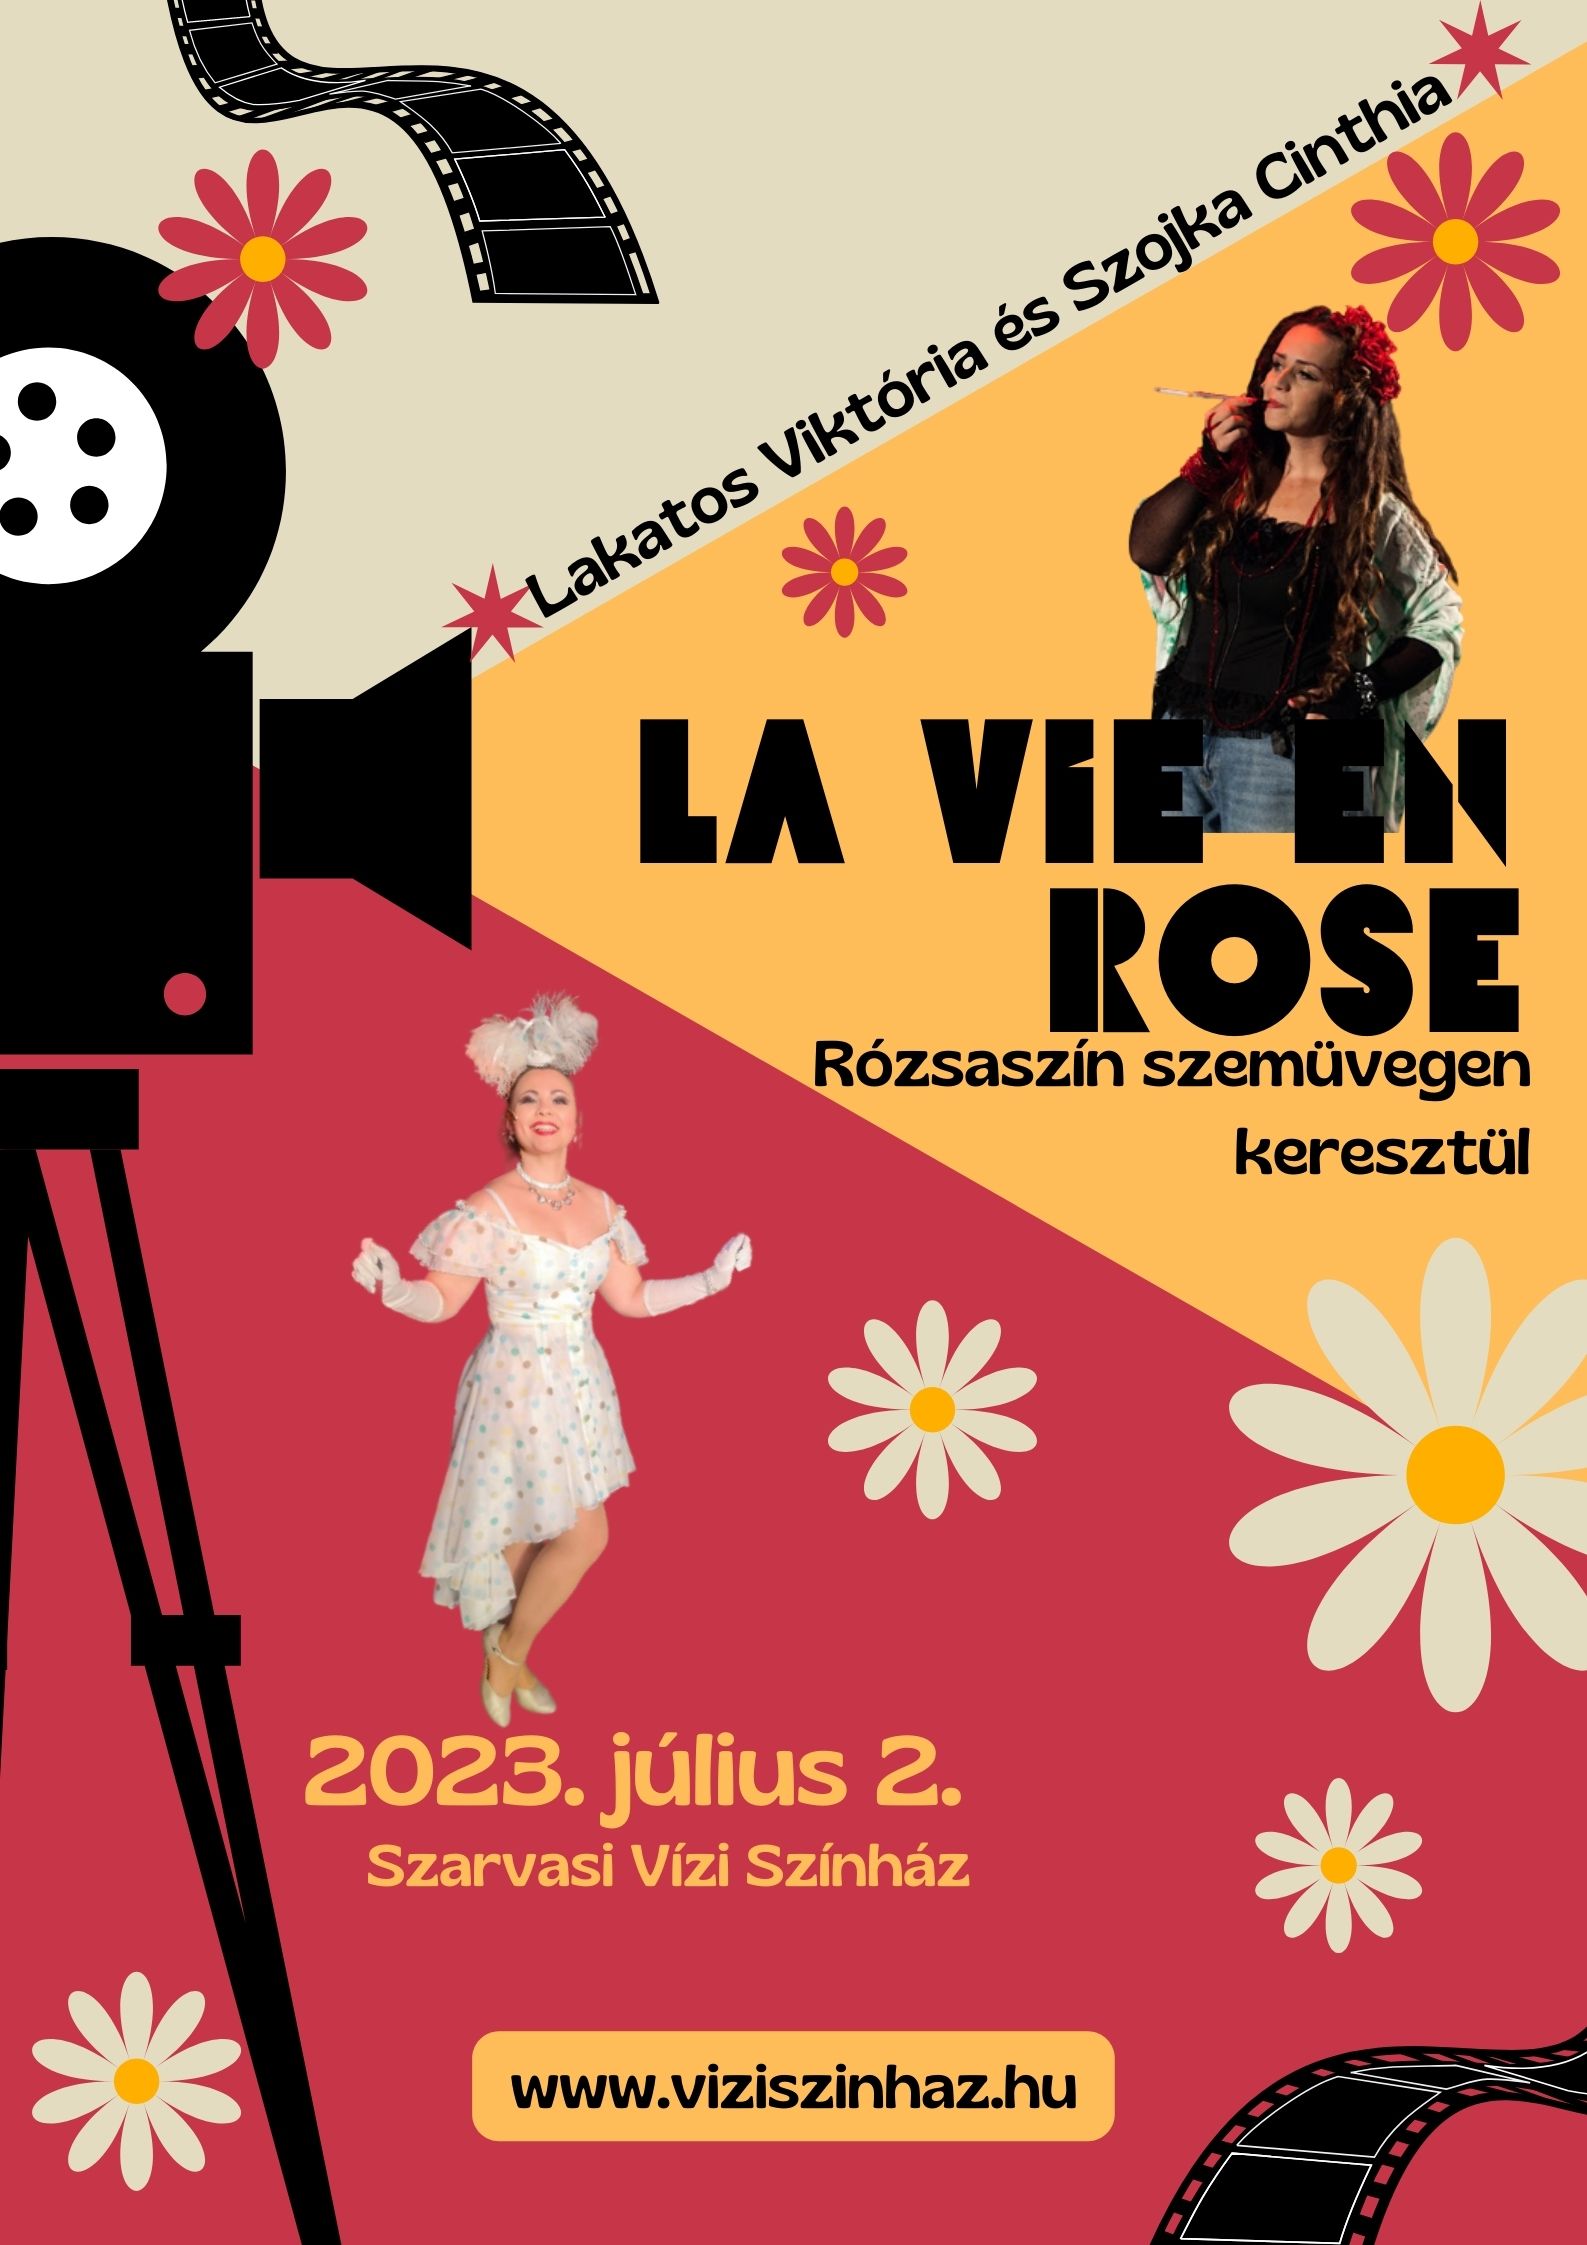 "La vie en rose" - Lakatos Viktória és Szojka Cinthia közös prózai estje